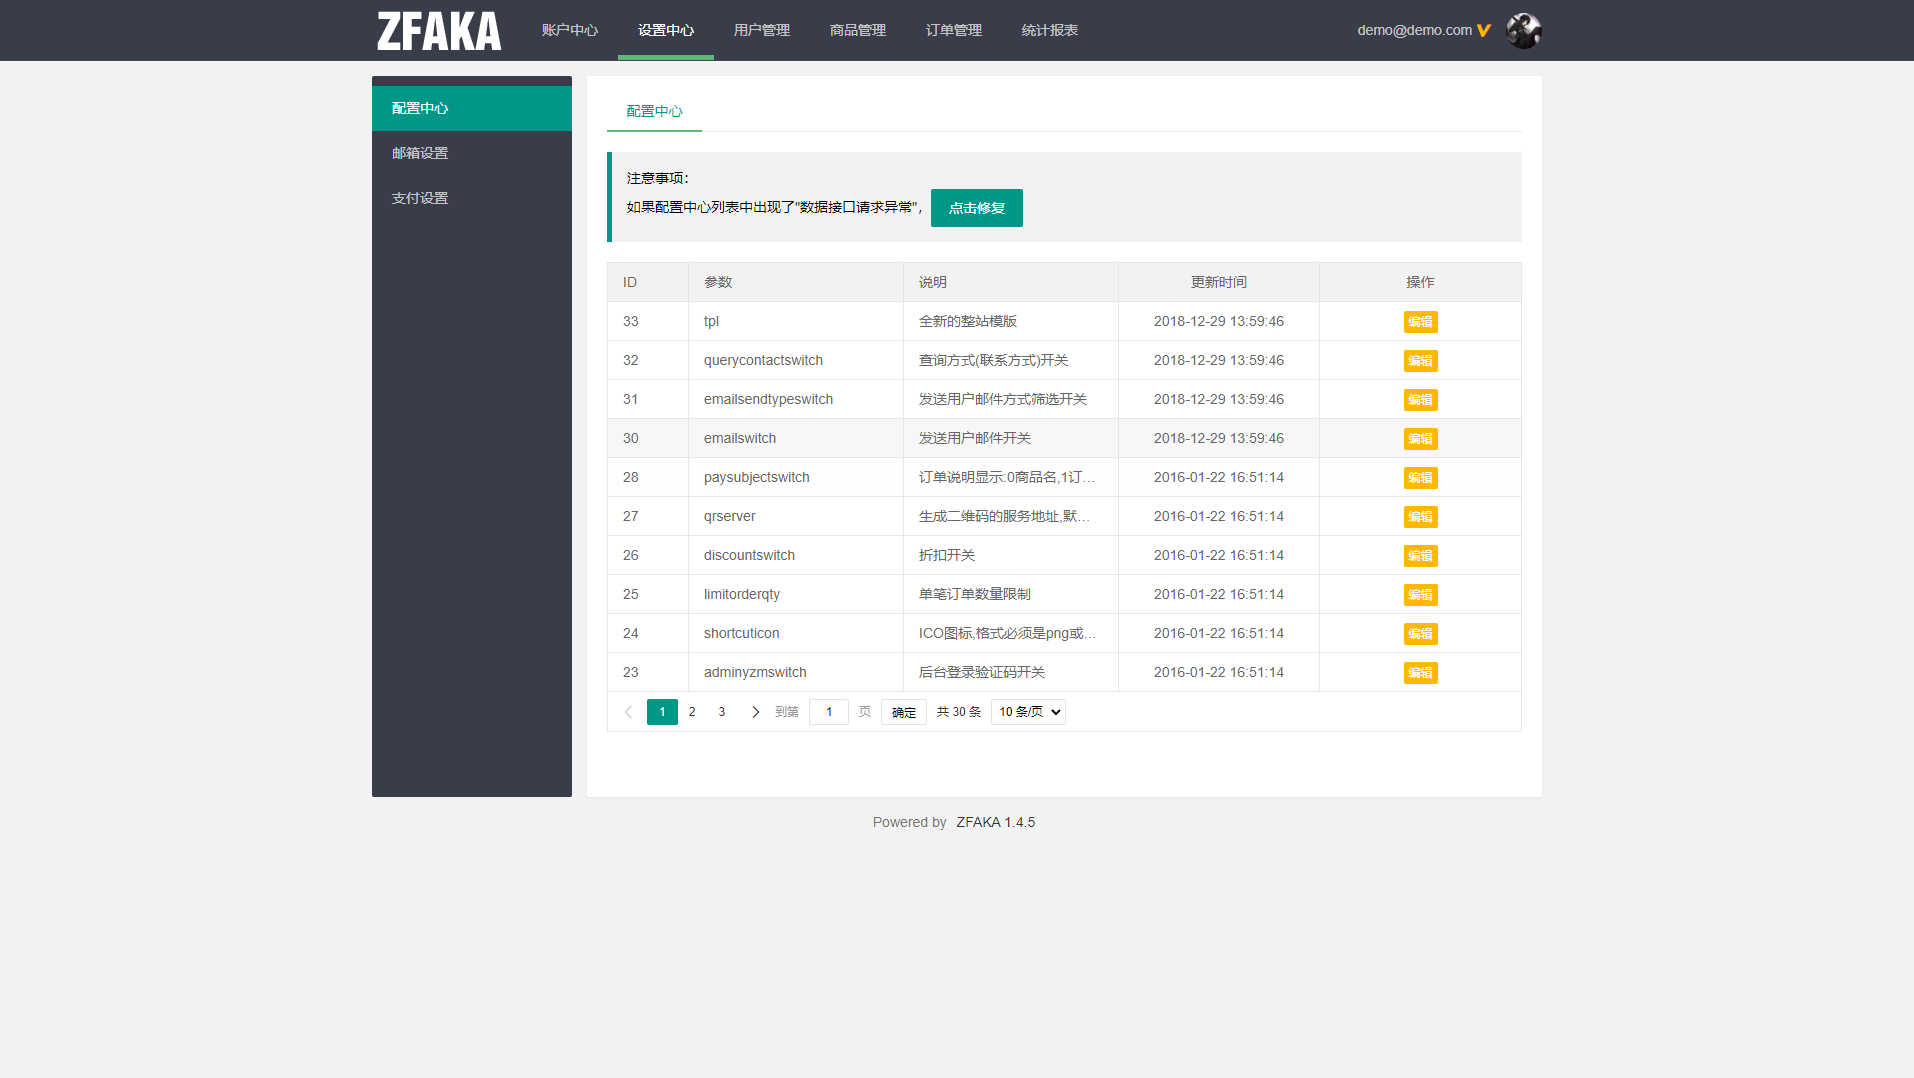 【亲测修复版】20211215最新ZFAKA高效的fk系统源码/完整运营版打包/修复支付接口/带视频搭建教程